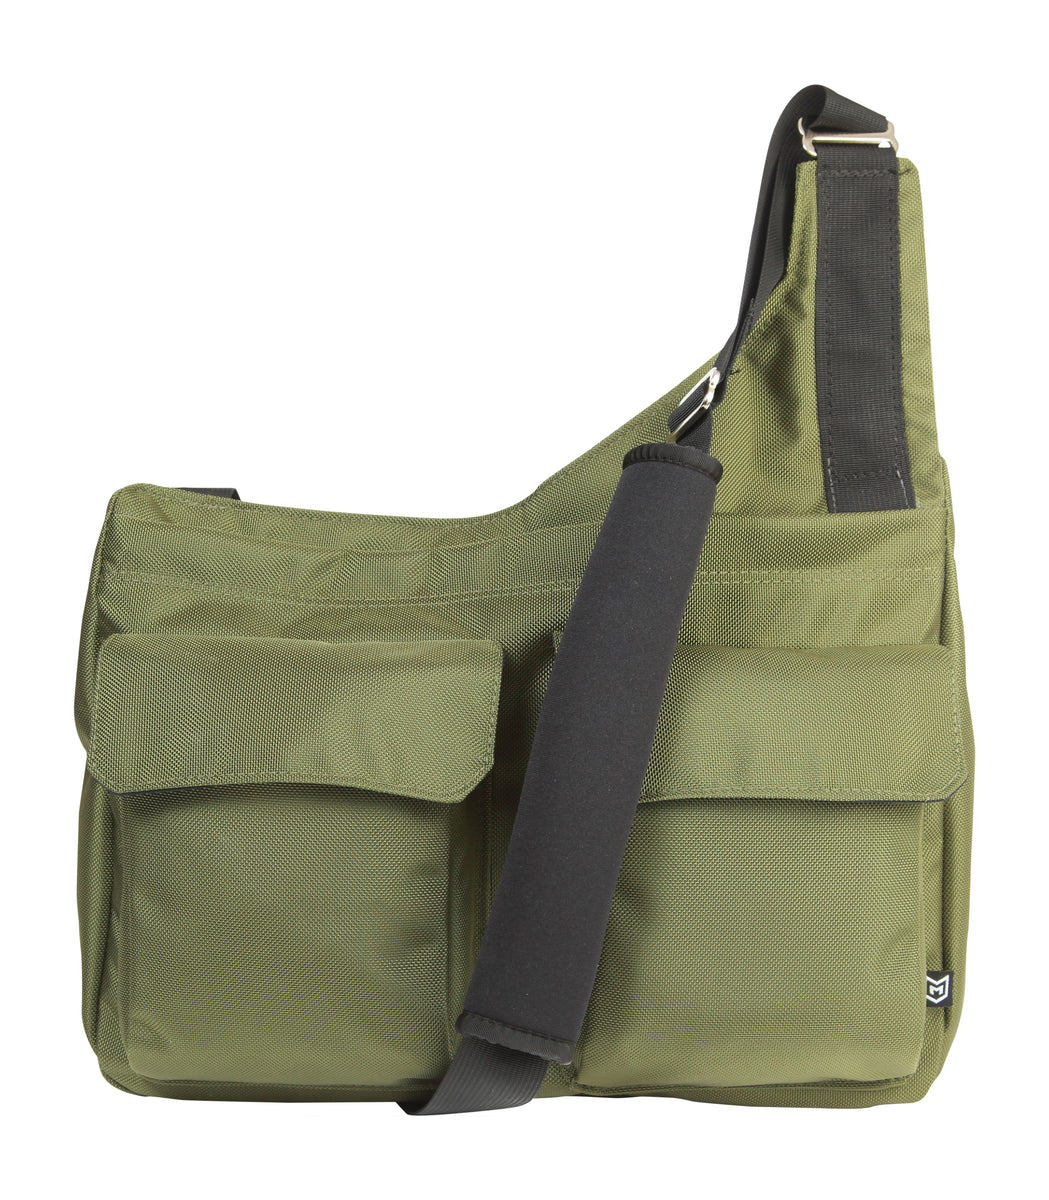 Õde Bag - Green – missionarybag